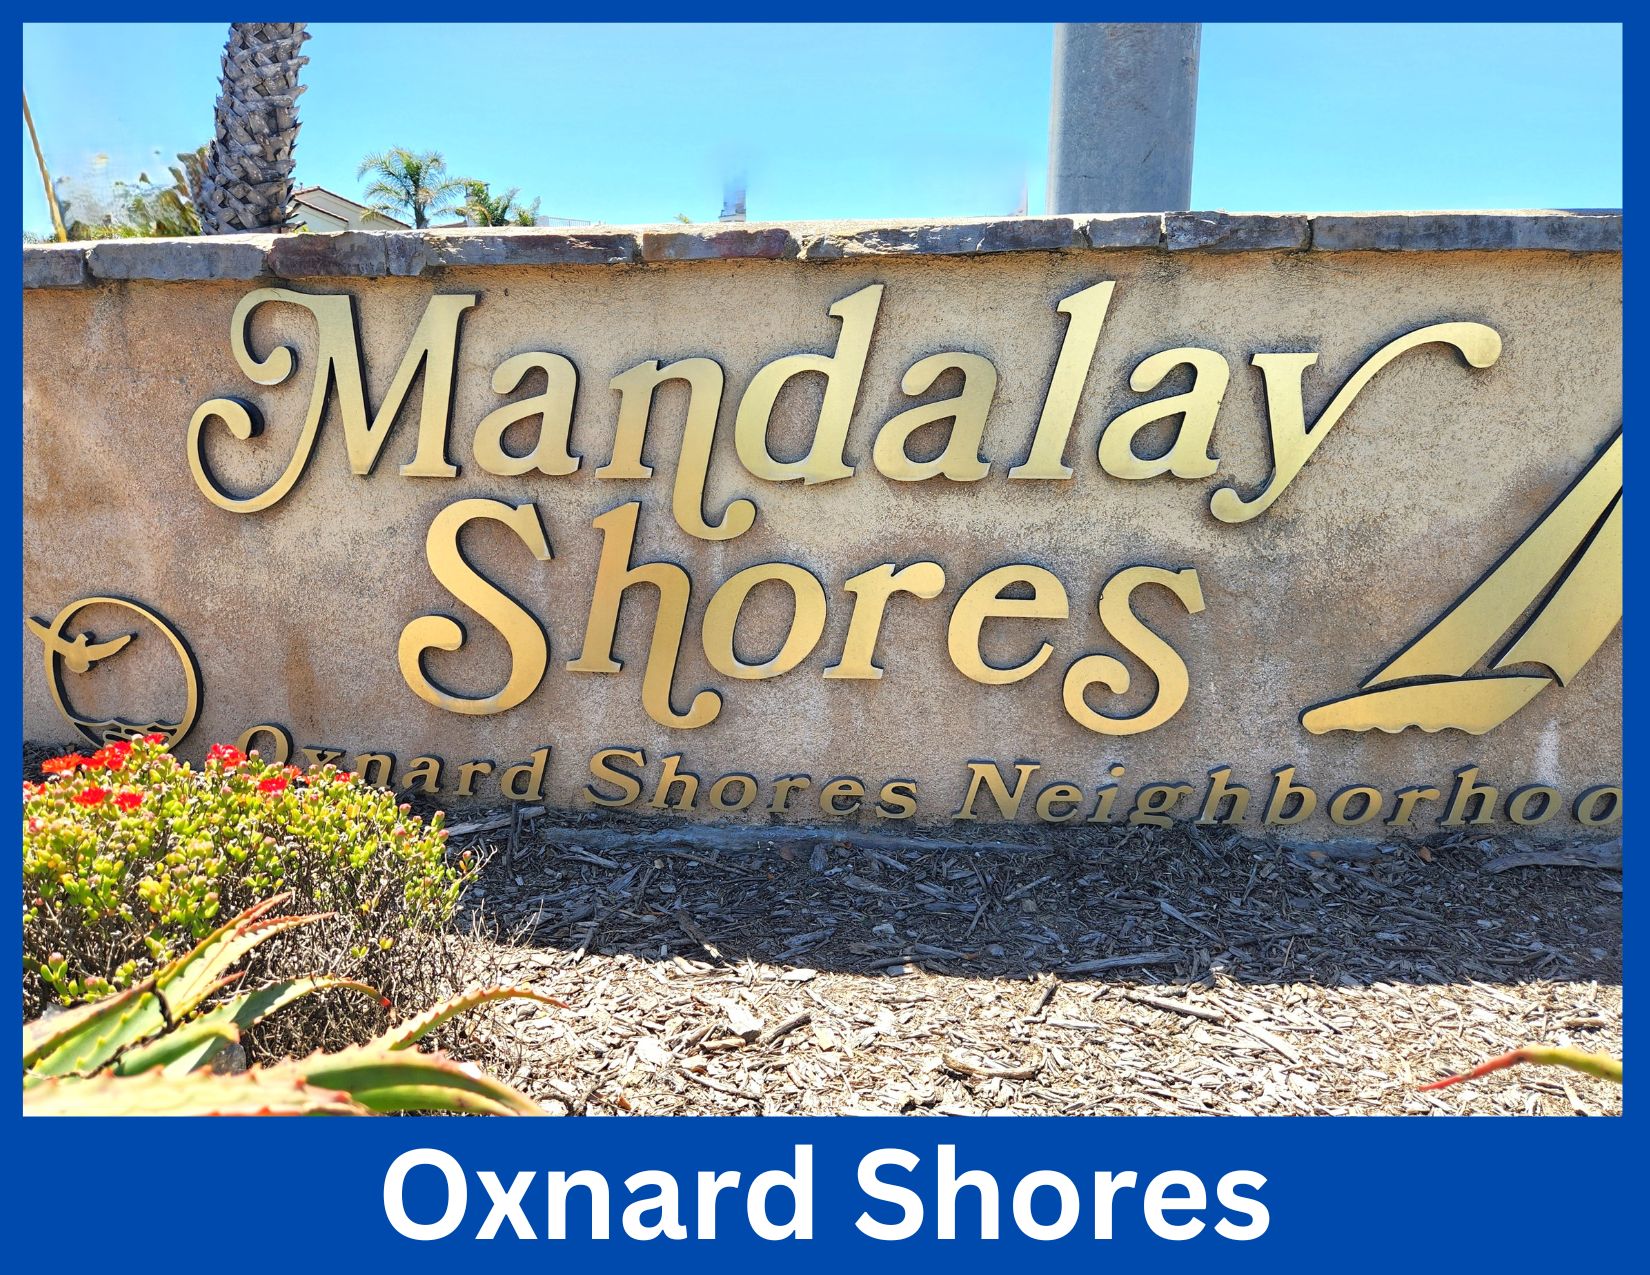 Oxnard Shores, Oxnard